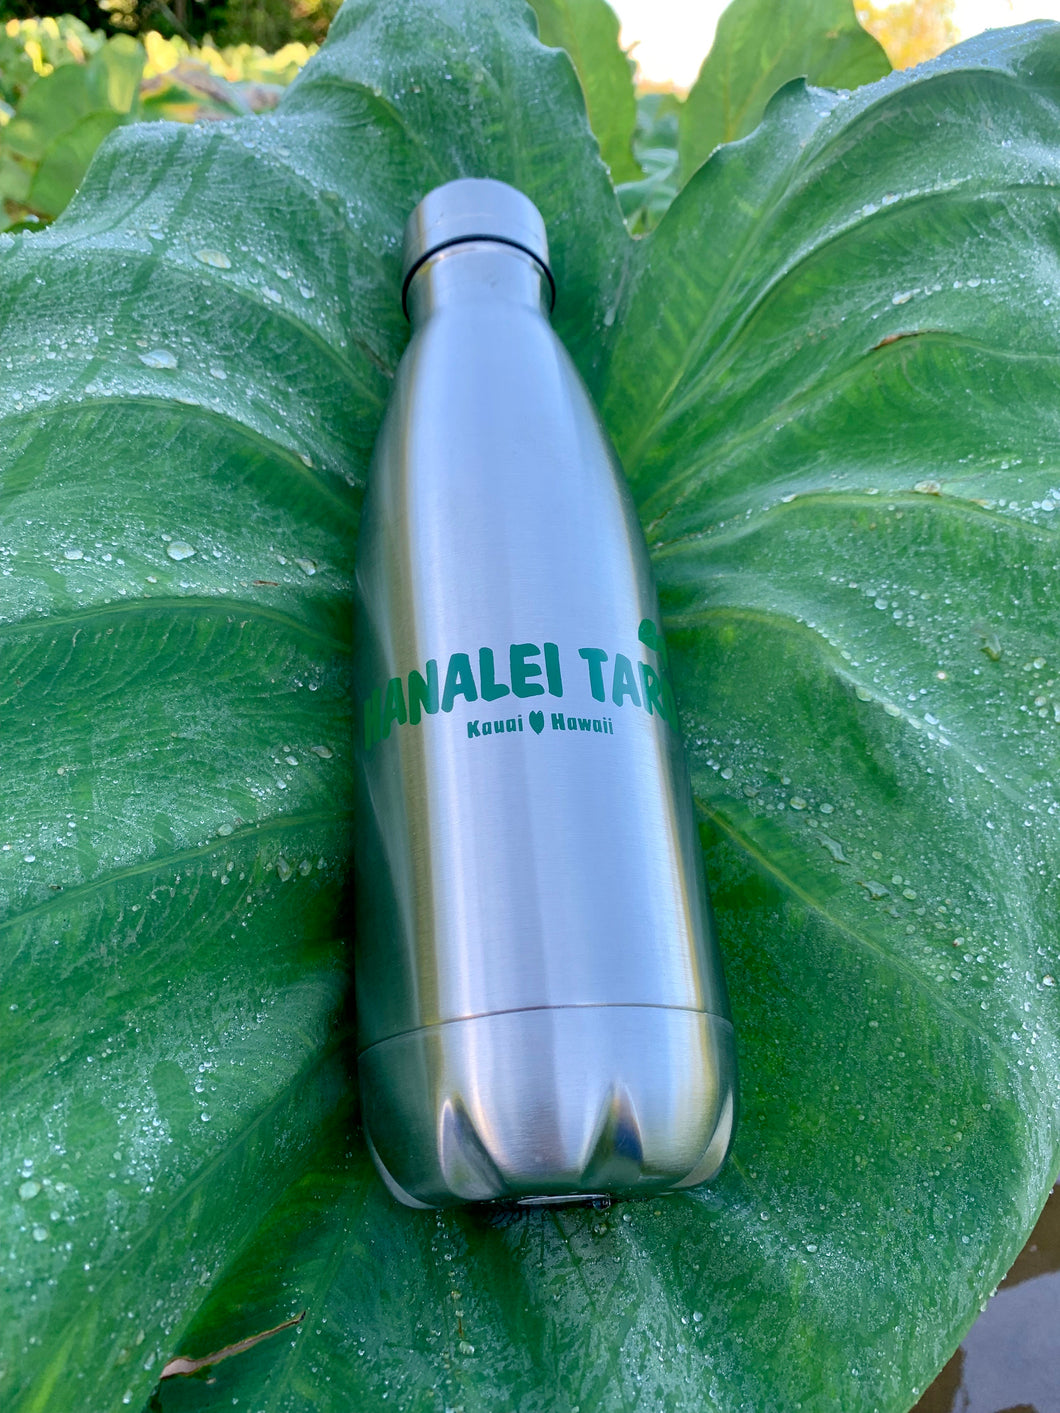 Hanalei Taro Insulated Bottle